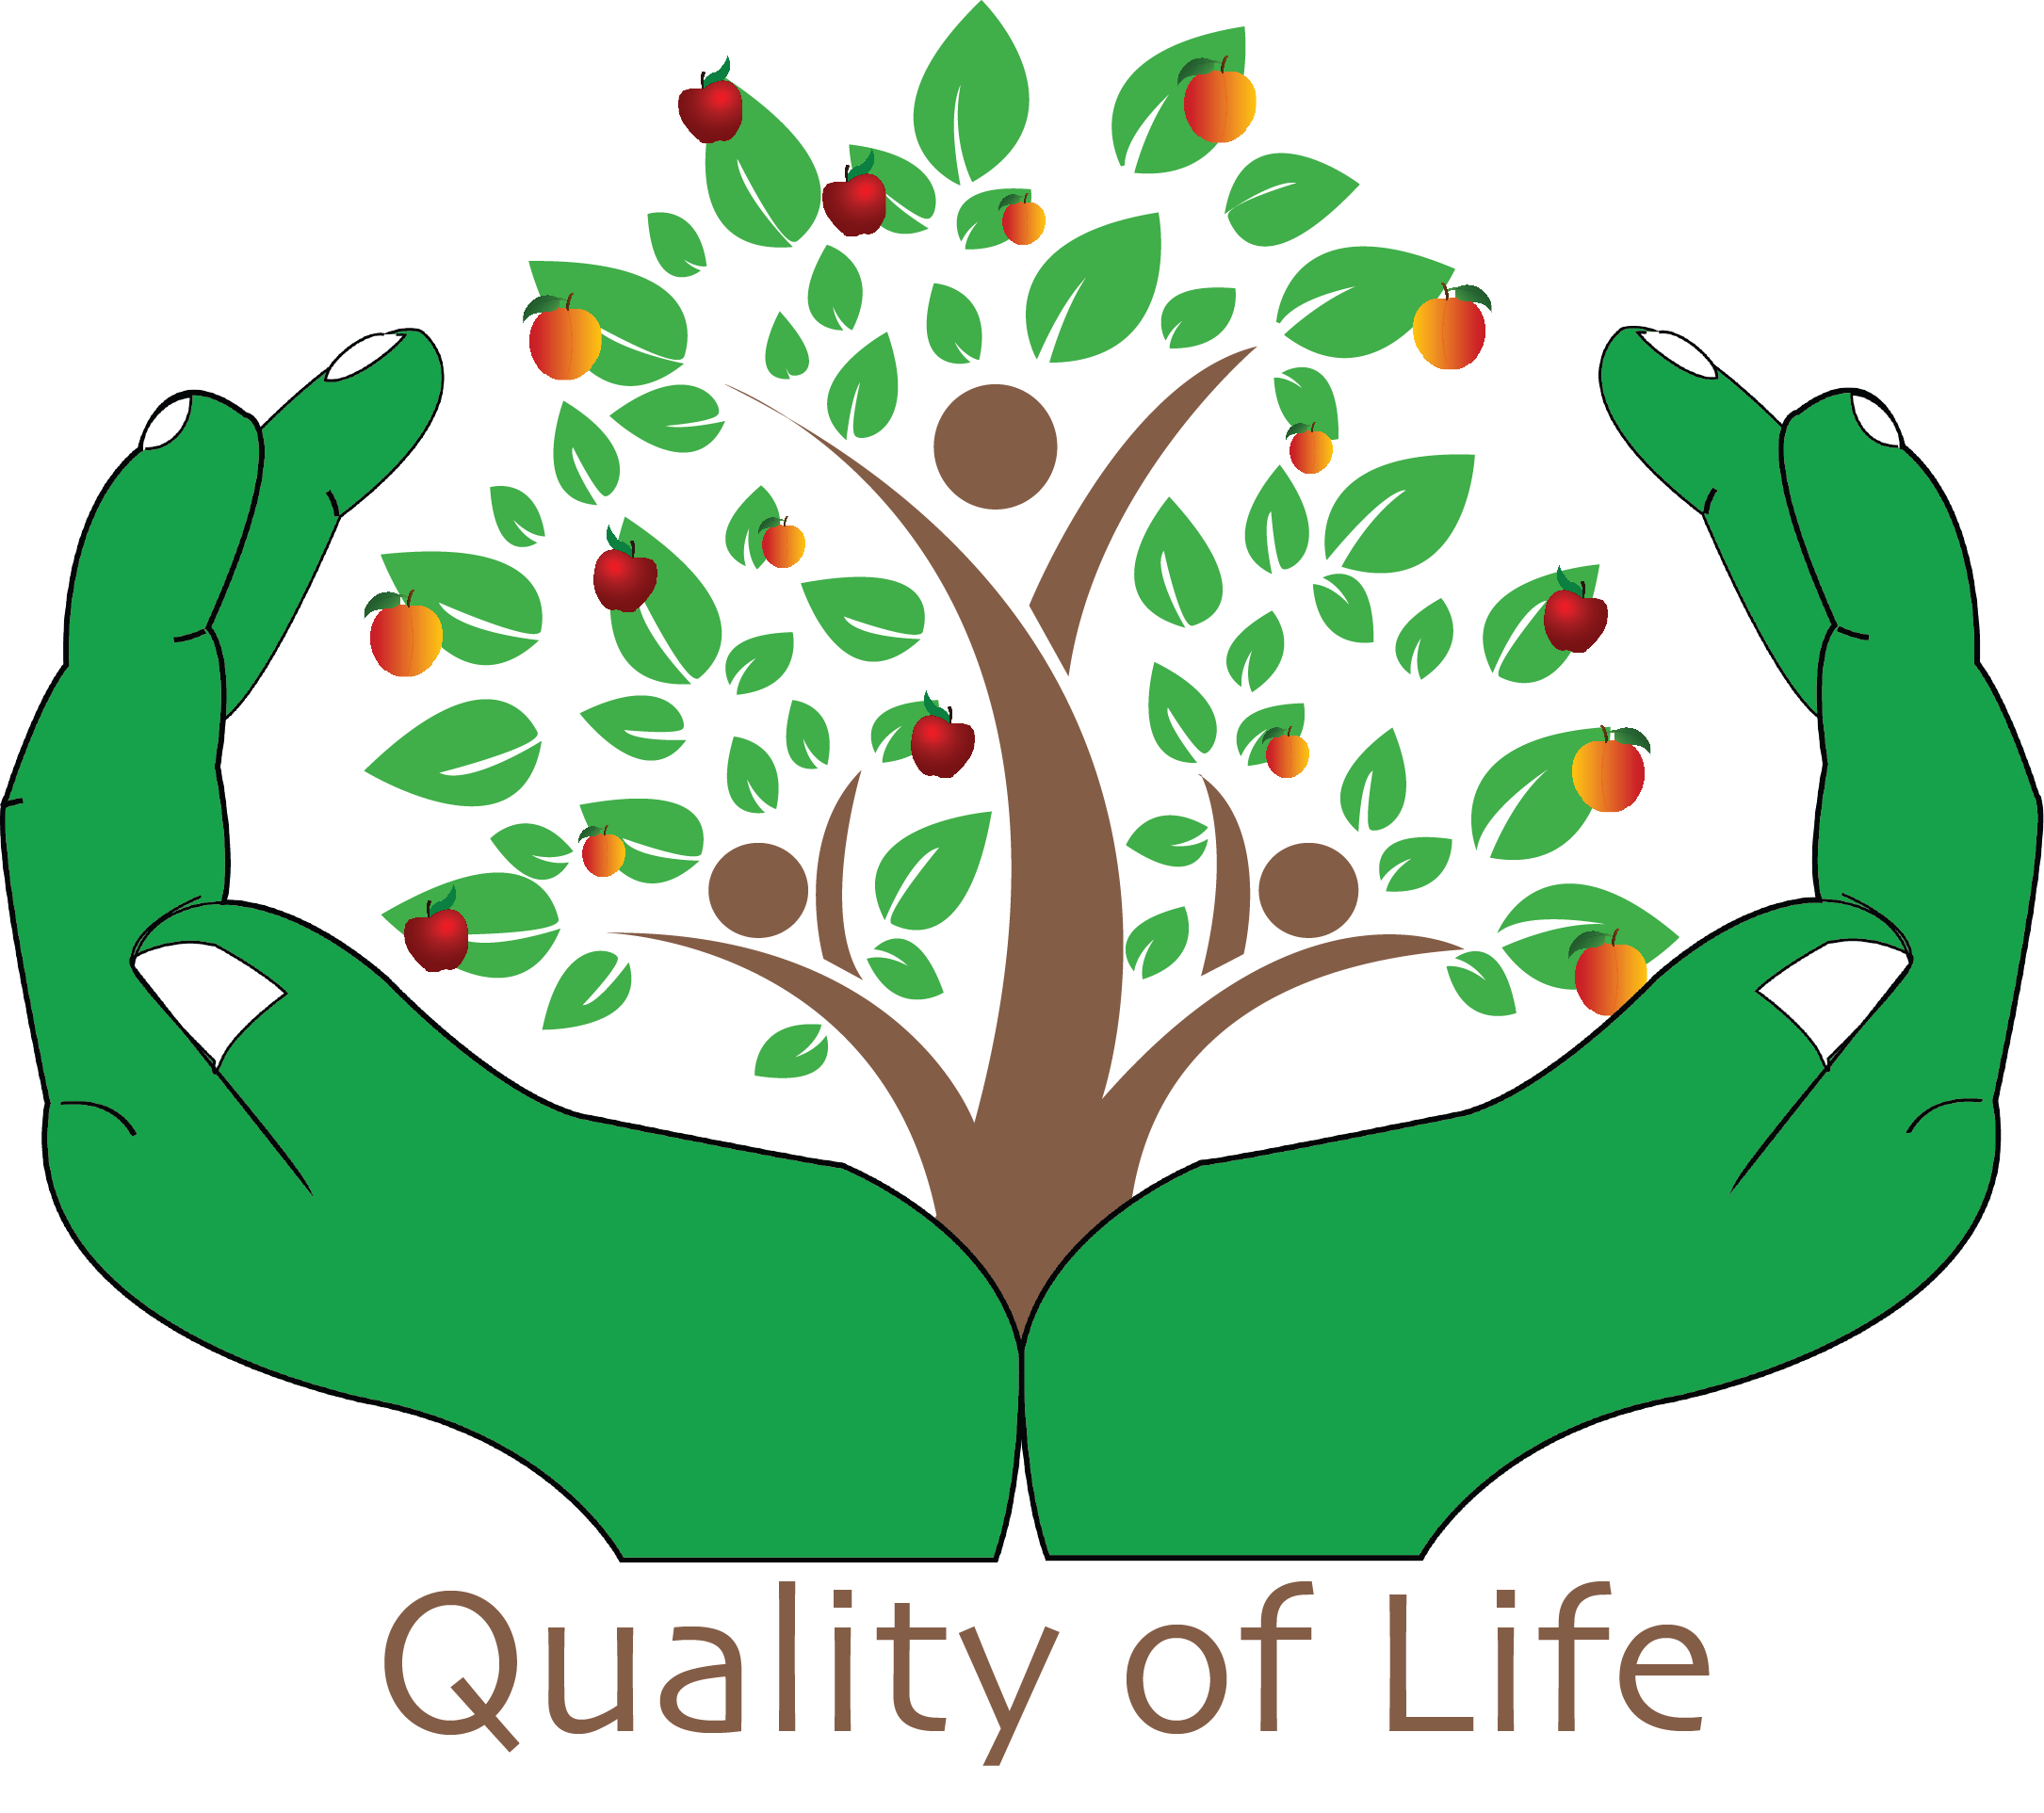 Improved quality of life. Качество жизни иллюстрация. Дерево эмблема. Здоровье и качество жизни. Дерево здорового образа жизни.